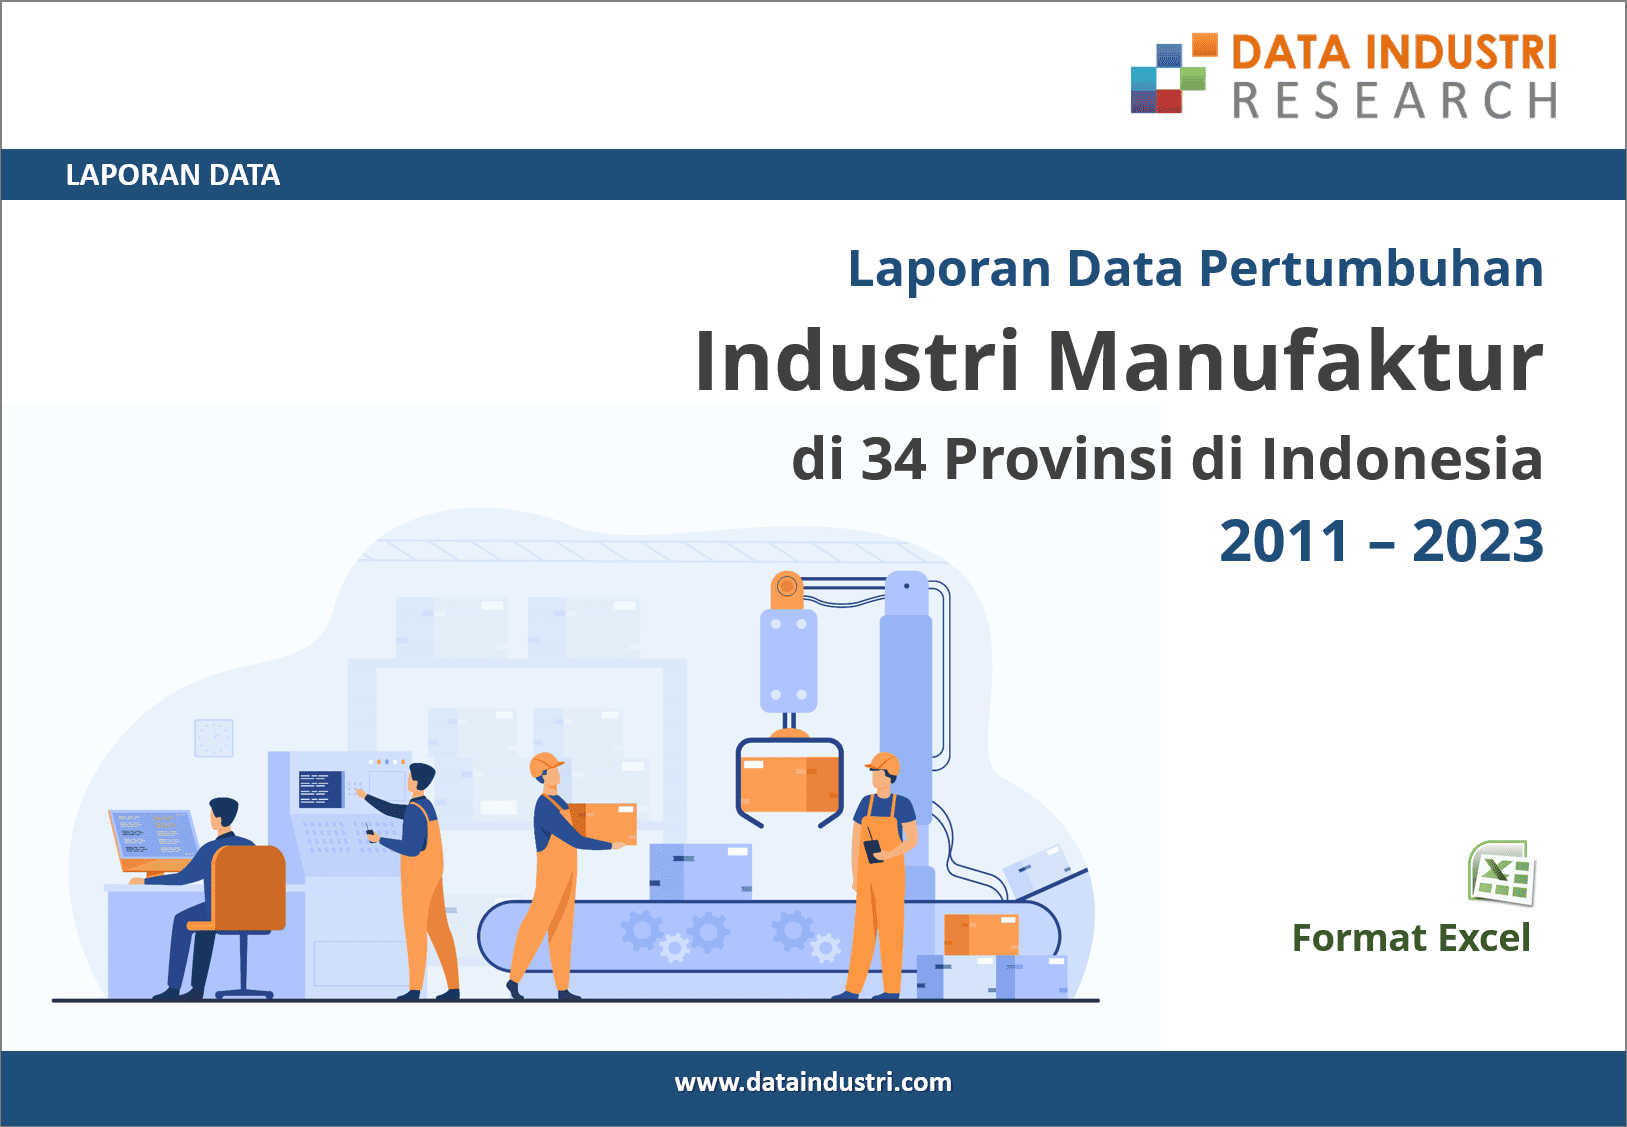 Laporan Data Pertumbuhan Industri Manufaktur di 34 Provinsi, 2011 - 2023